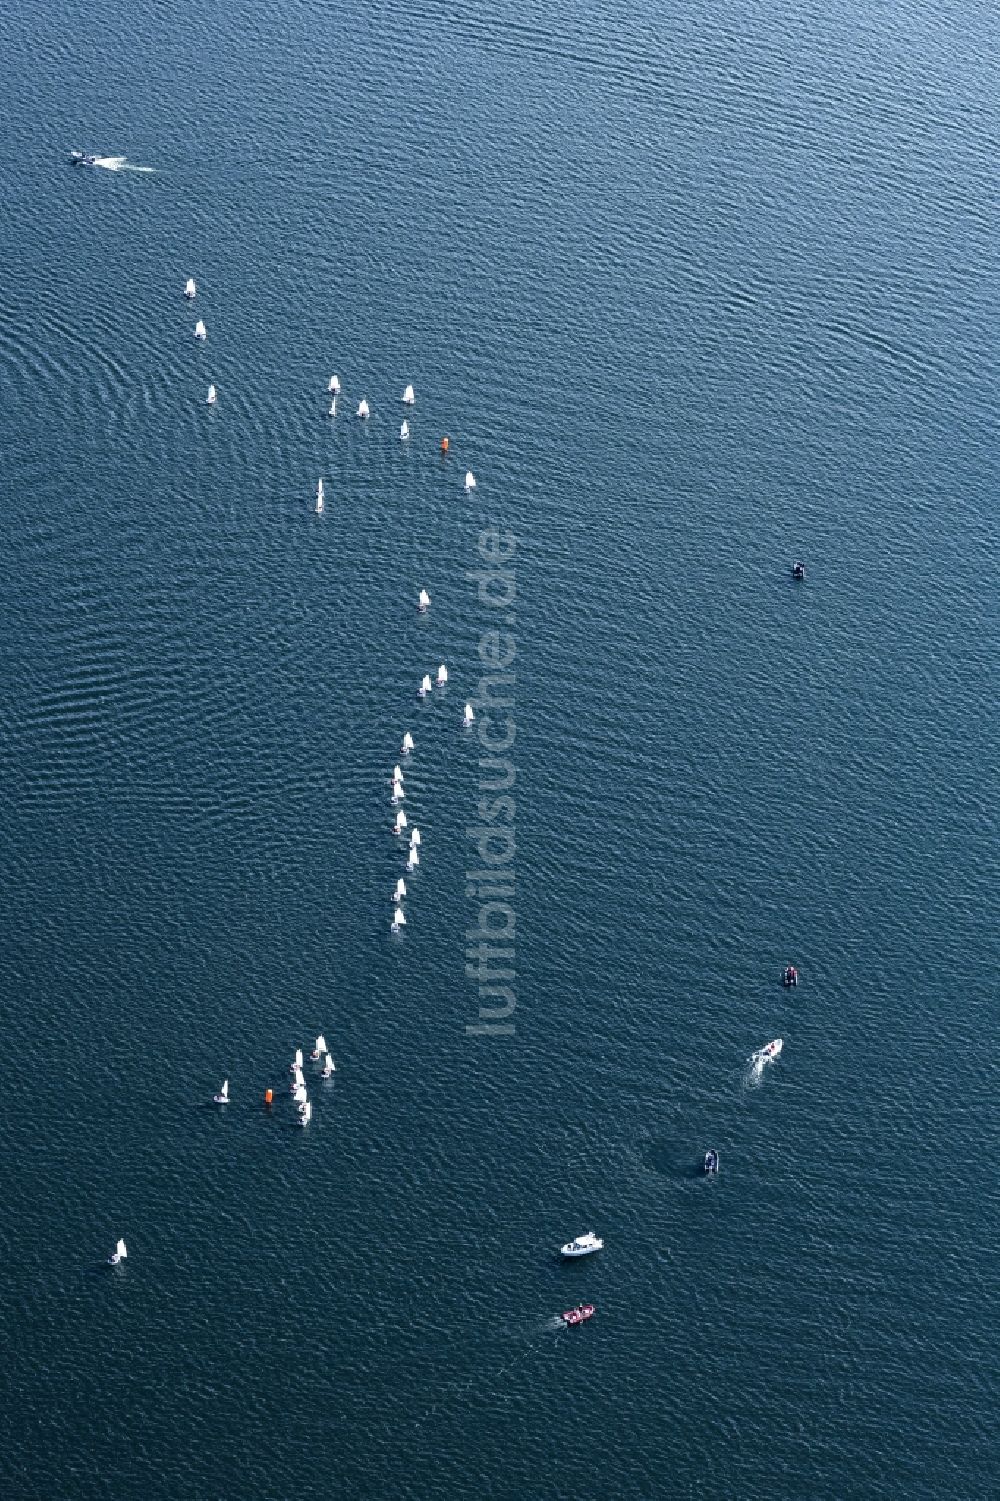 Luftbild Seeon-Seebruck - Sportboot - Segelschiff in Fahrt bei einer Segelregatta auf dem Chiemsee in Seeon-Seebruck im Bundesland Bayern, Deutschland